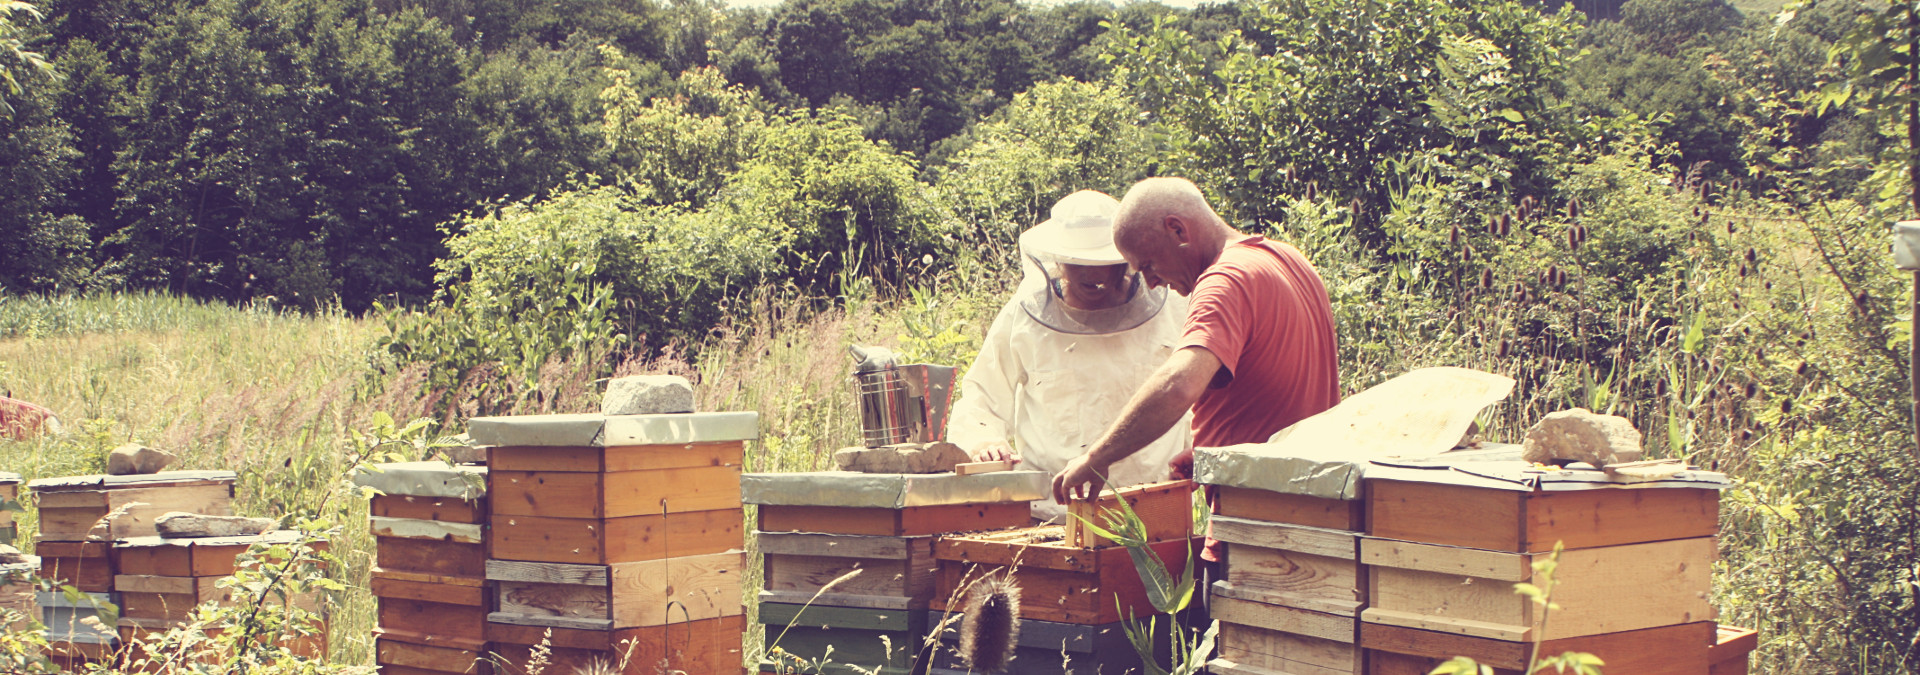 Arbeiten am Bienenstand